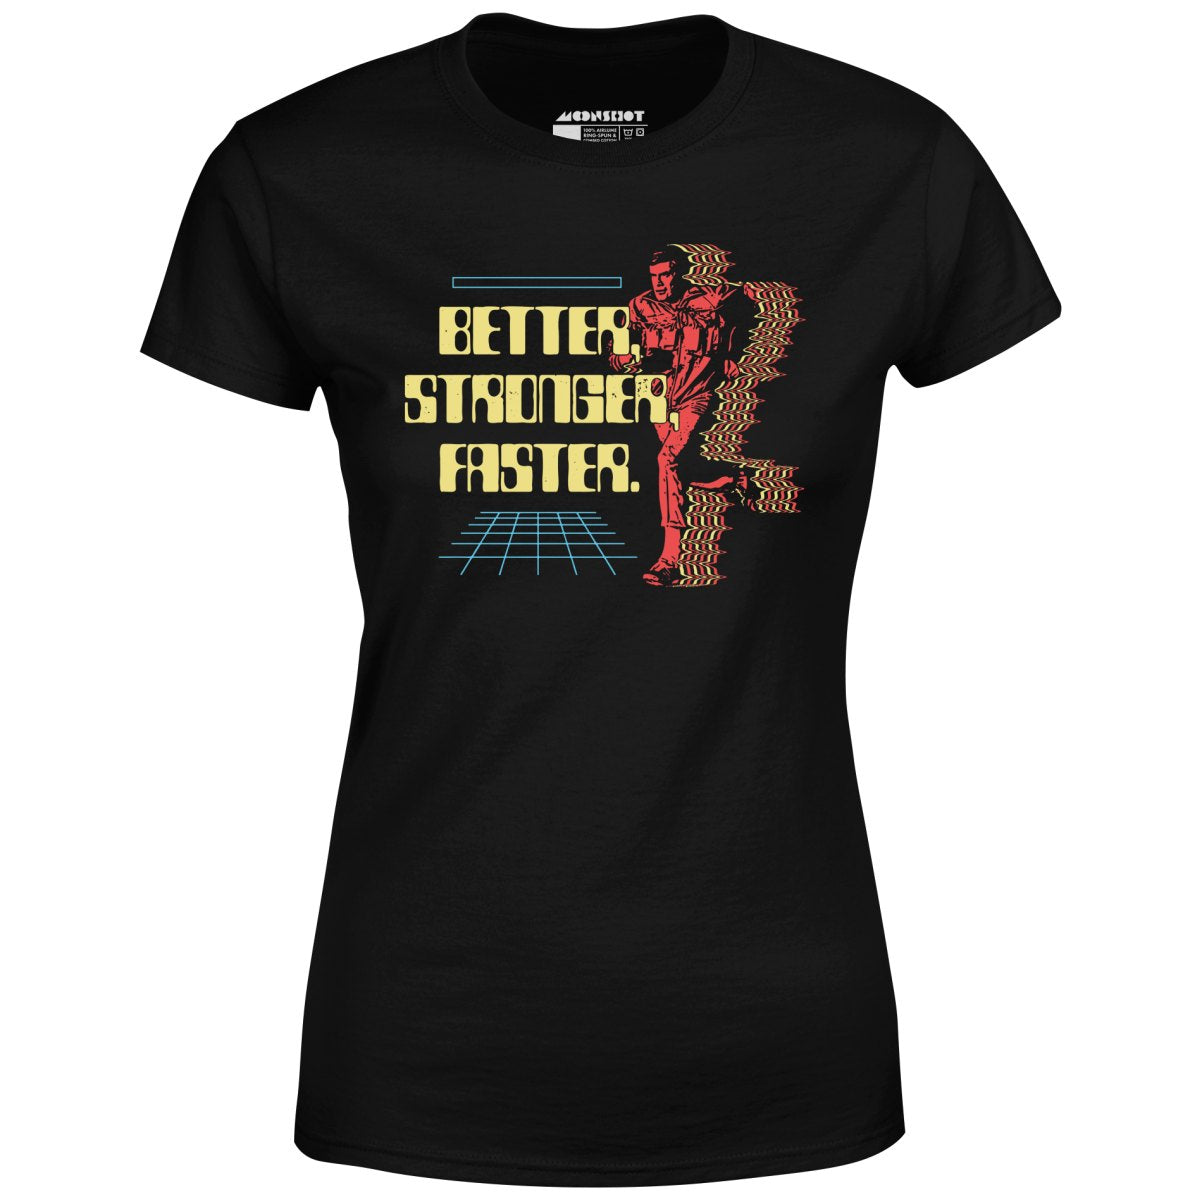 Better Stronger Faster - Women's T-Shirt